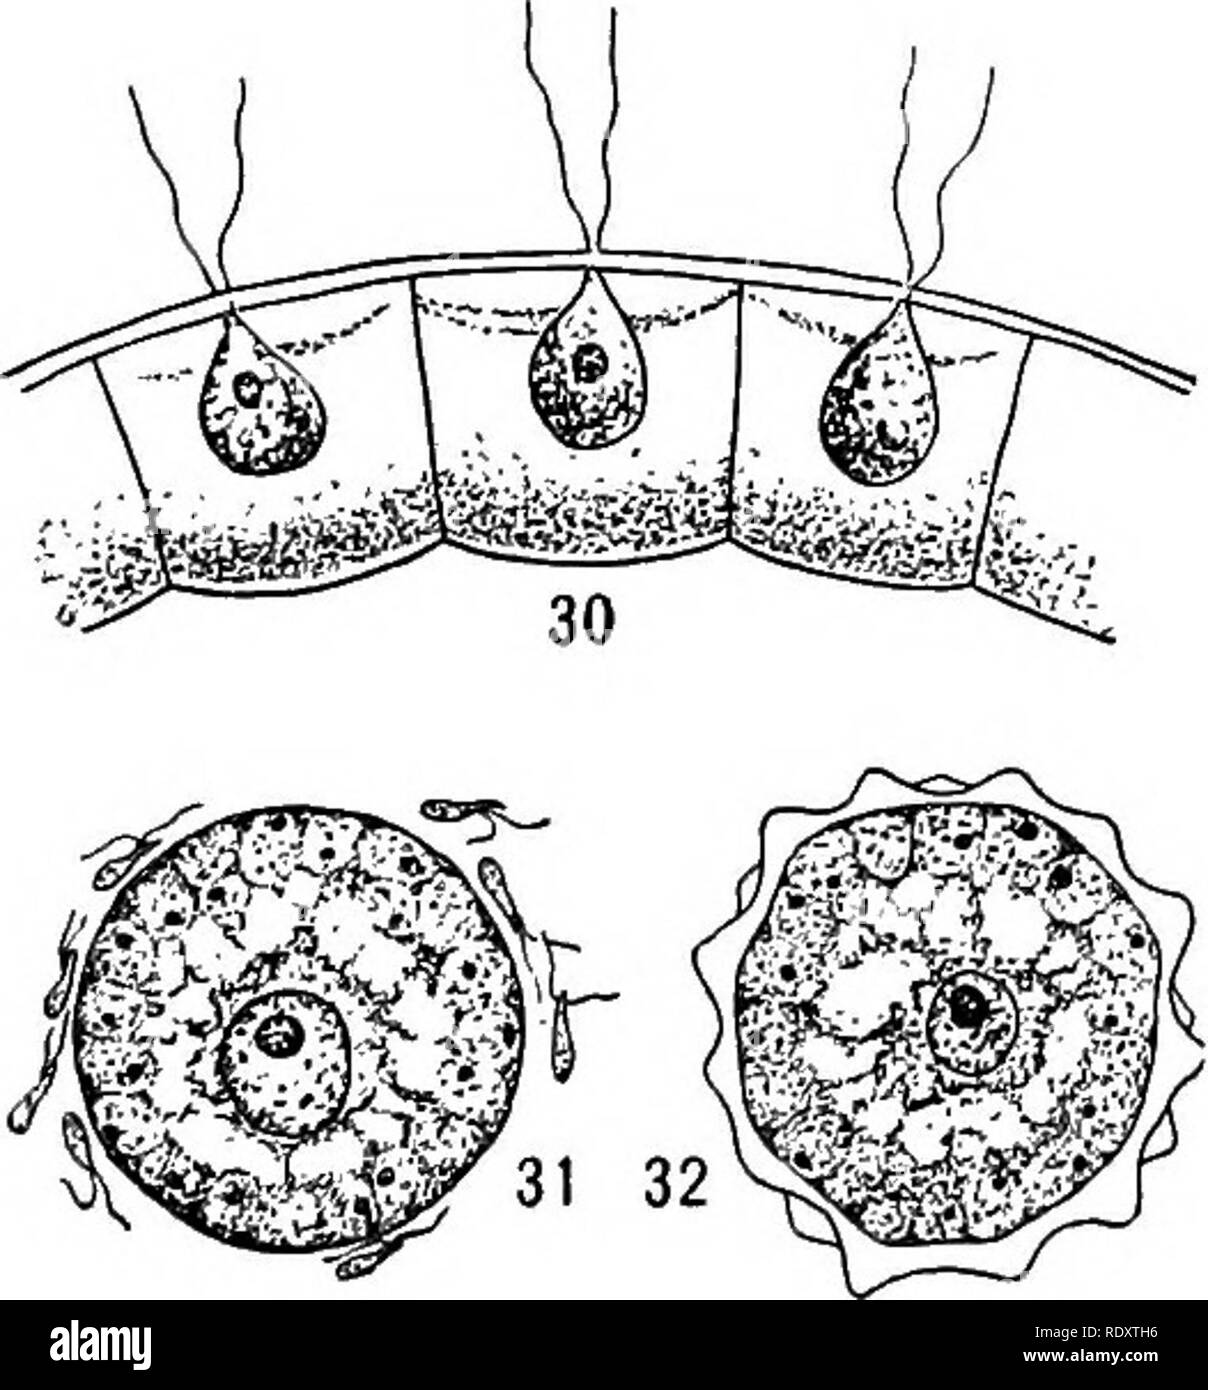 . Un libro di botanica per scuole e università ... La botanica. Fig. 29. - Volvox: la grande colonia globulare composto da piccole cellule vegetative collegati da filamenti di citoplasma, due grandi cellule formanti colonie, sLiitiiub 01 cyLupiastii, Lwo grandi coiony-ioi avviene nella cavità del e numerosi oospores con pareti ruvide." colonia (fig. 31), e la risultante oospore è un riposo, cella protetta (fig. 32). Su germina- zionare le oospore produce uno sciame di cellule attive (zoospores) che aderire tra loro e di organizzare una nuova colonia. In questo cosiddetto Volvox differenziazione di Colonia ha portato Foto Stock